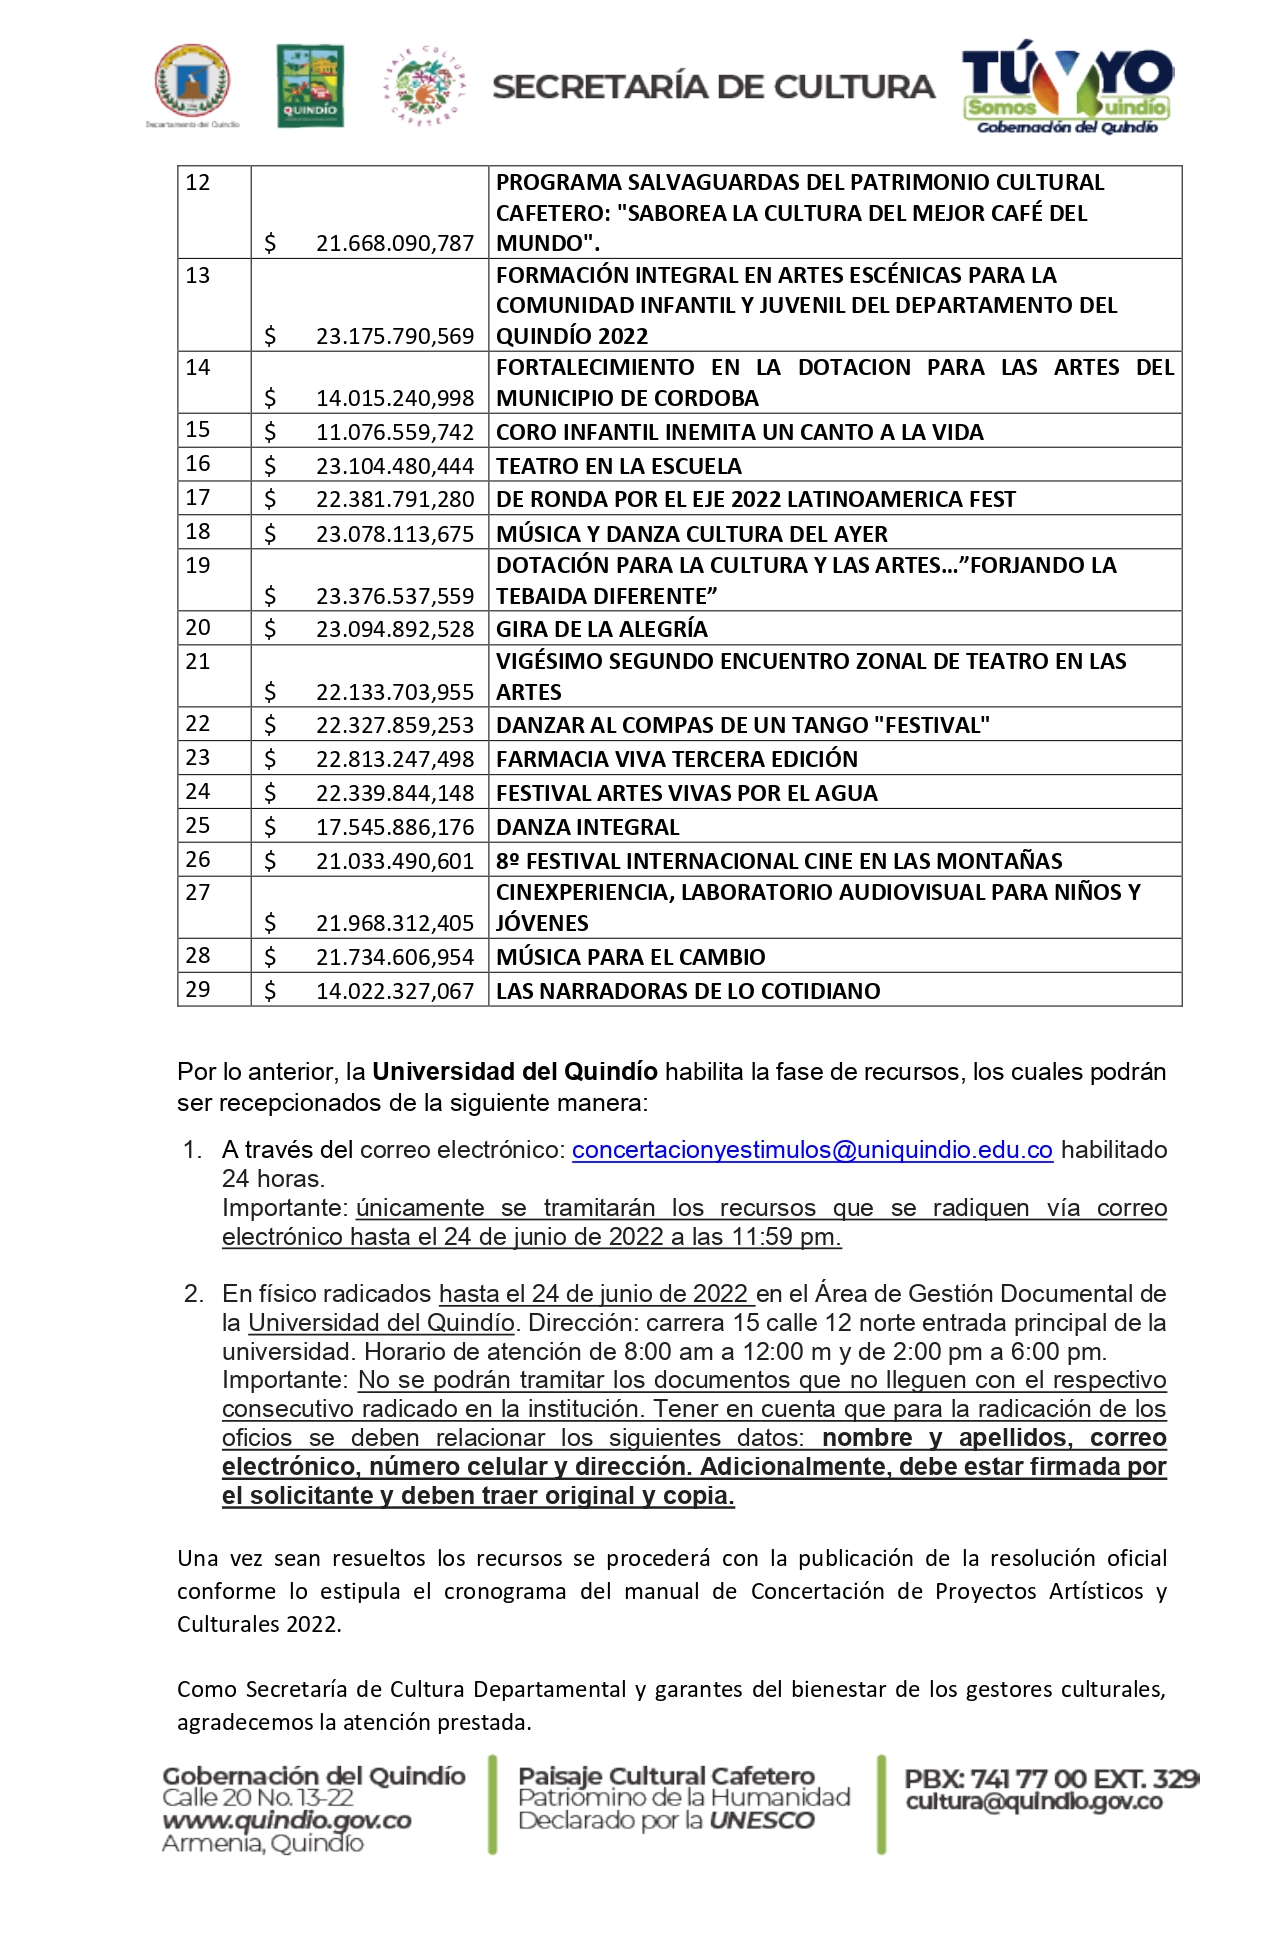 LISTADO_DE_PERSONAS_NATURALES_GANADORAS_CONSERTACIÓN_2022_pages-to-jpg-0003.jpg - 1.00 MB